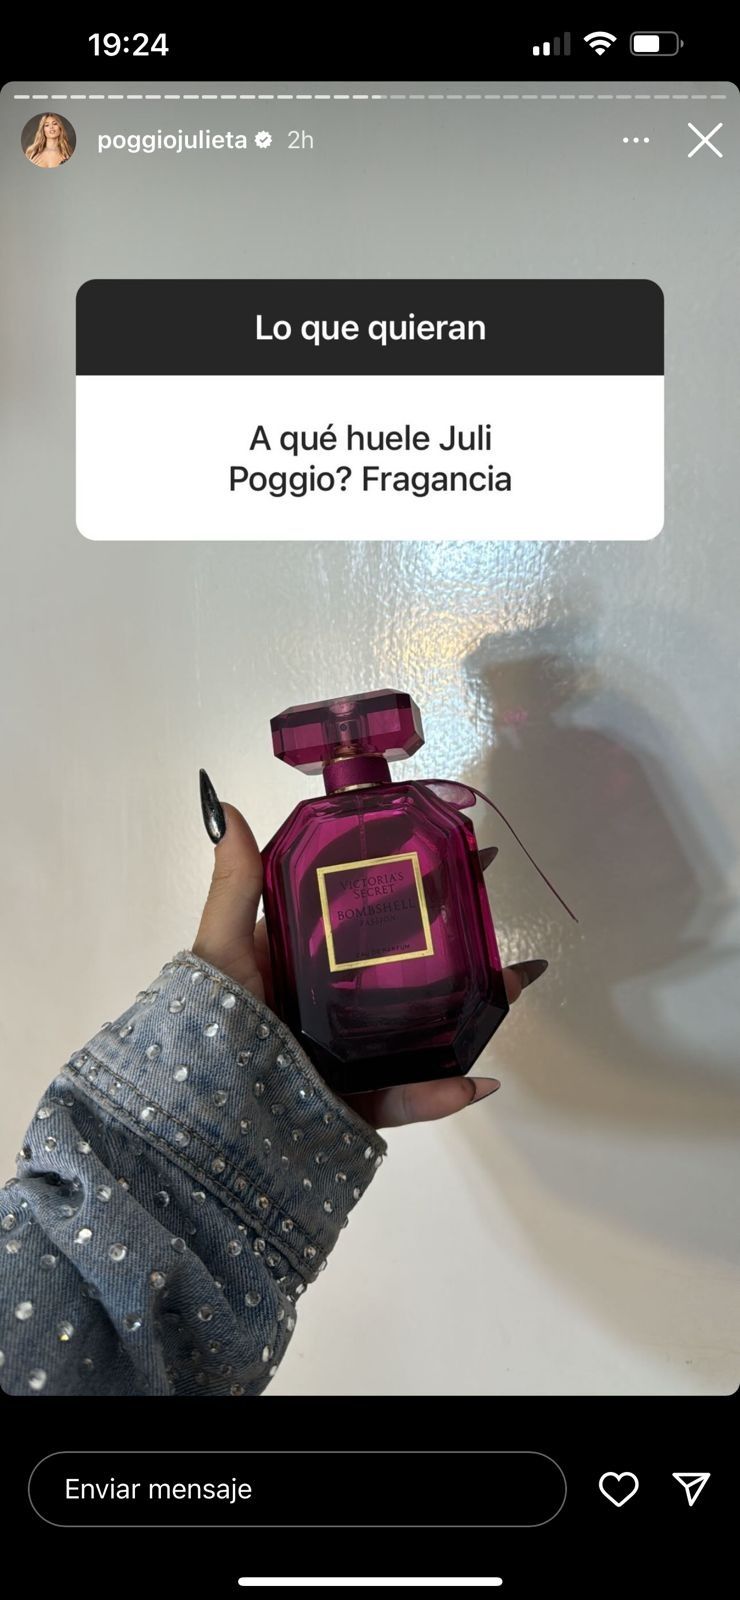 Cuál es el exclusivo perfume que usa Julieta Poggio